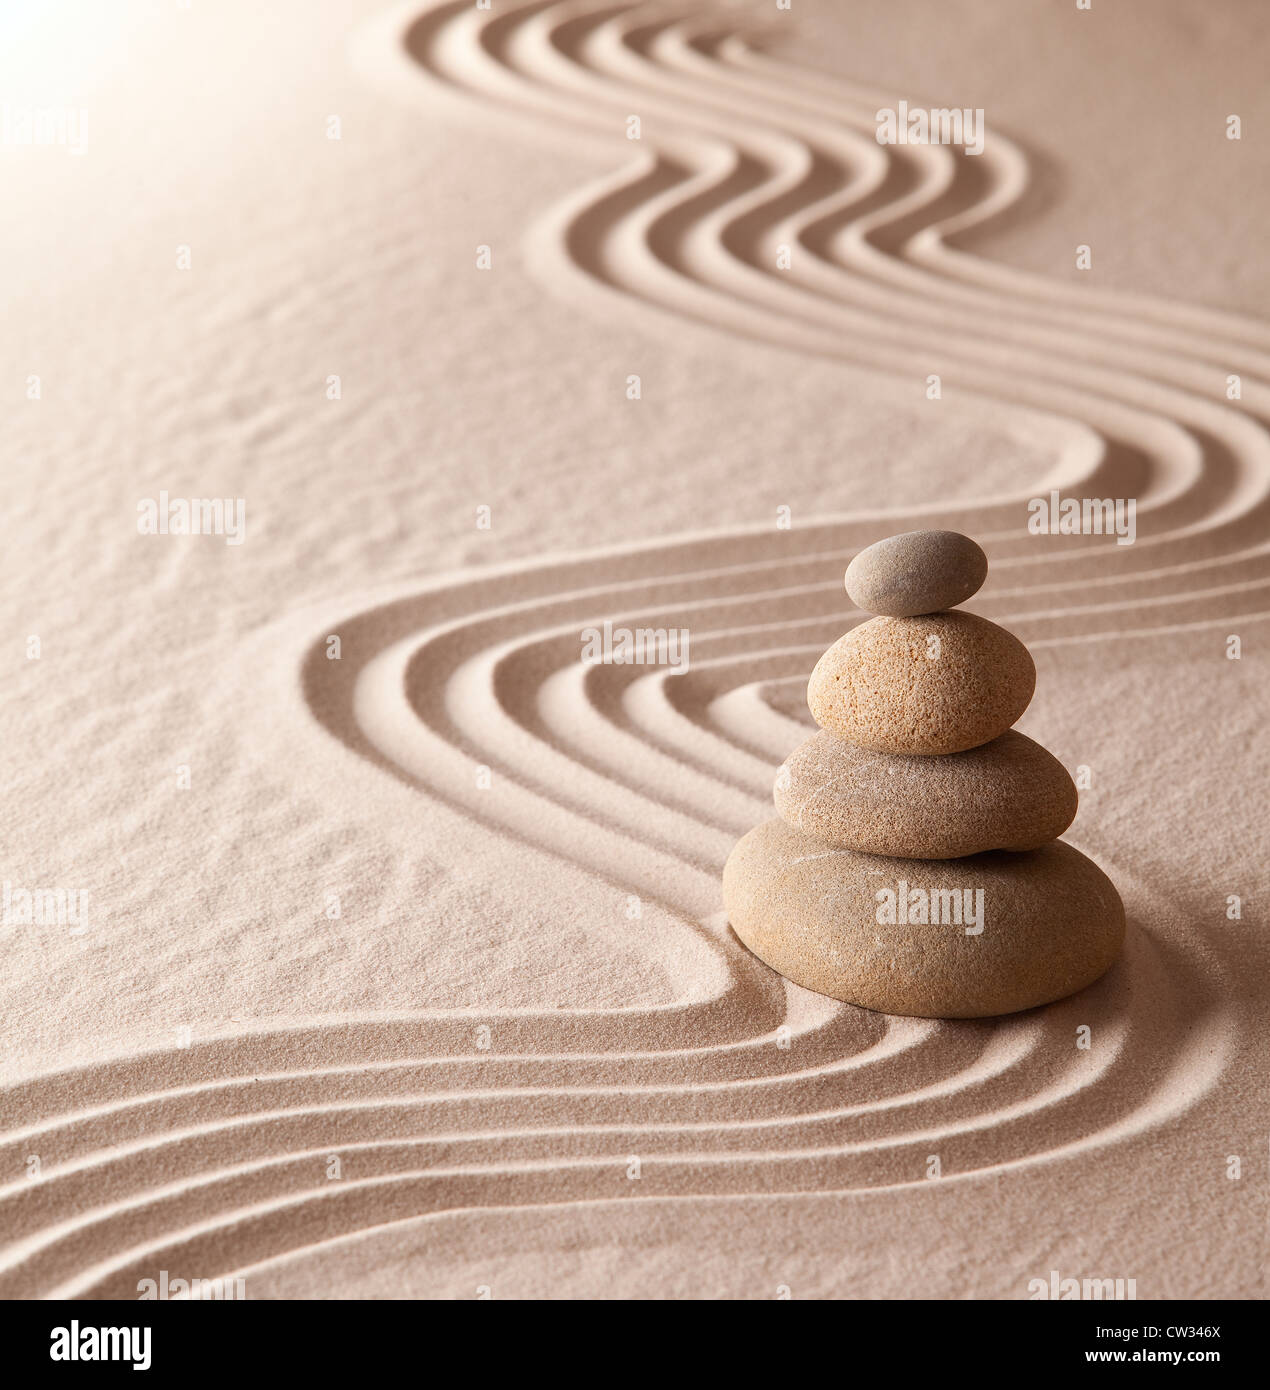 Jardin de méditation zen de sable et de pierres l'harmonie et l'équilibre symbole de pureté spirituelle la simplicité et l'harmonie Banque D'Images